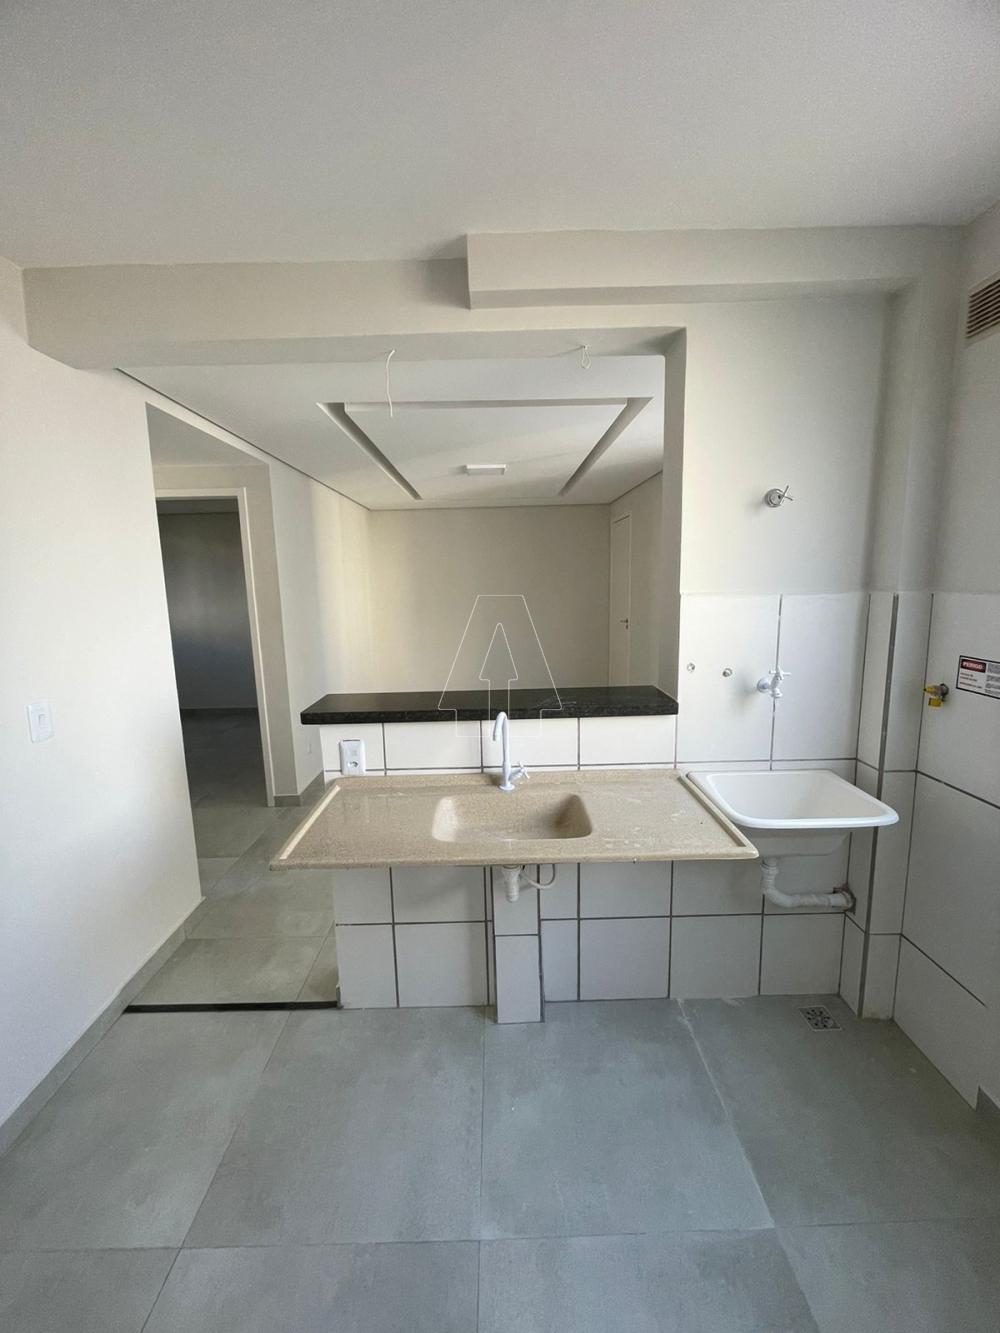 Comprar Apartamento / Padrão em Araçatuba R$ 150.000,00 - Foto 4